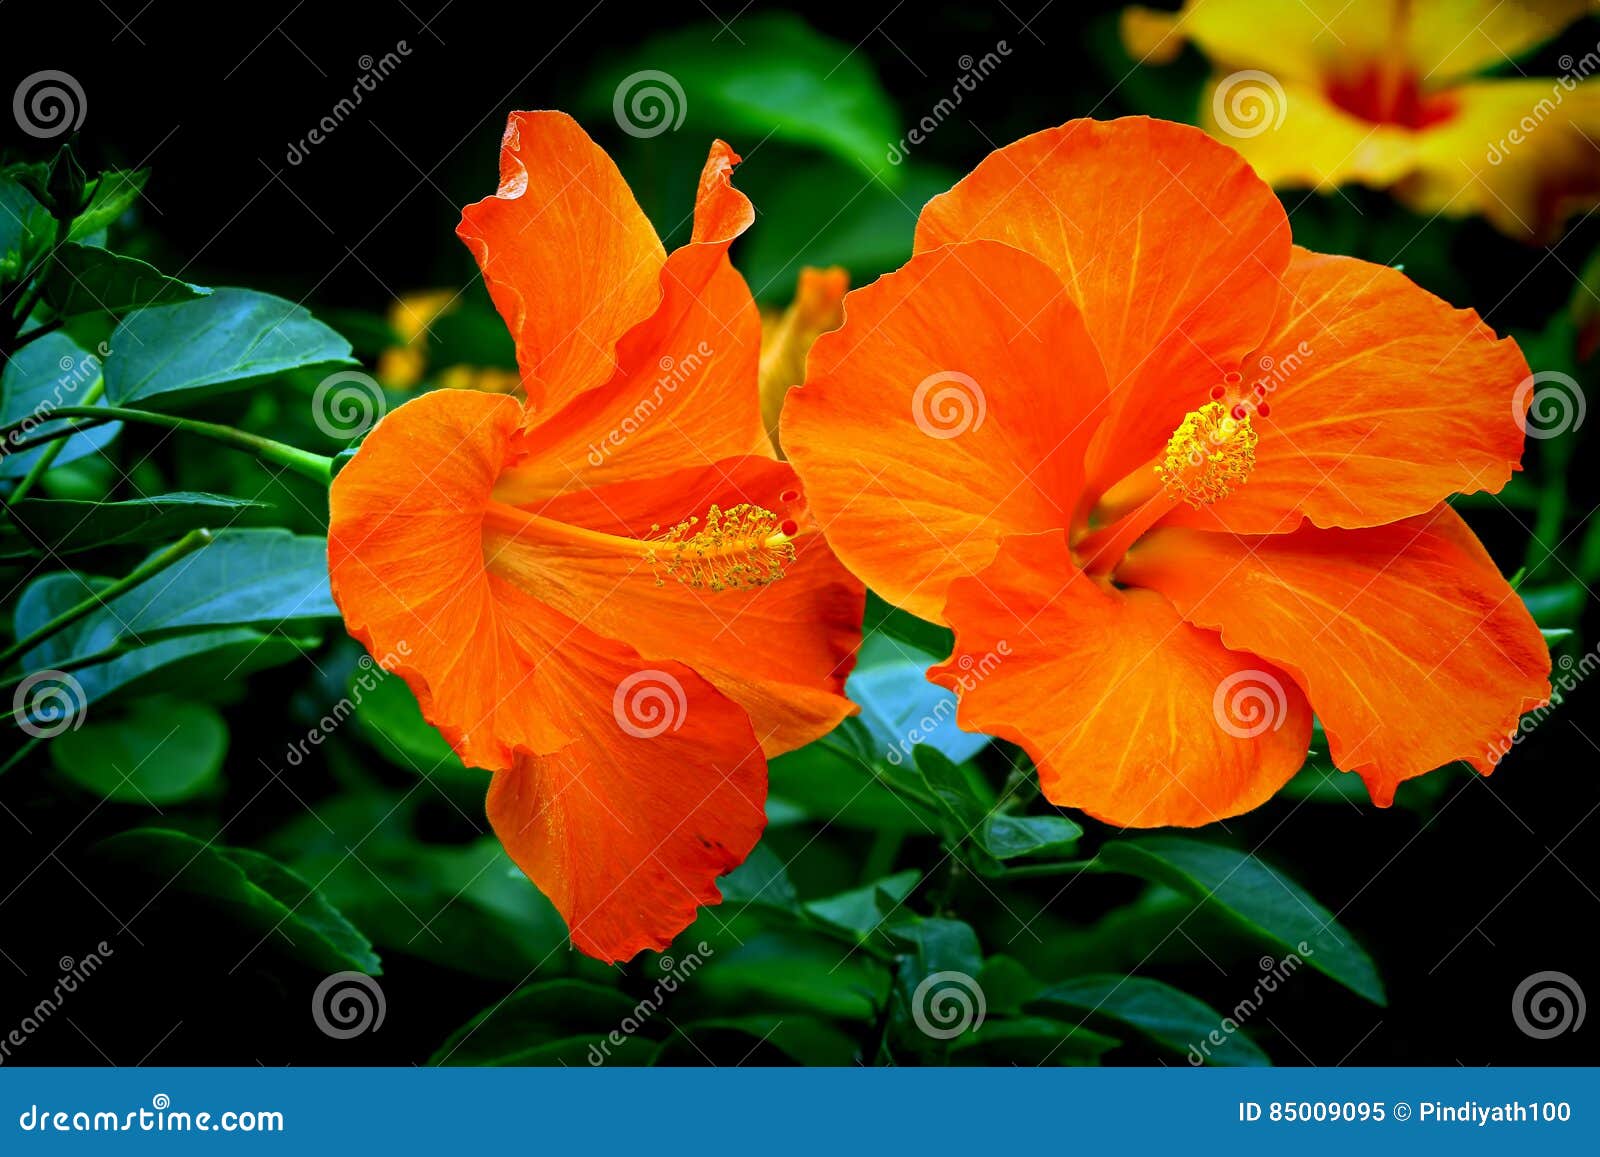 pair of vibrant orange hibiscus flowers